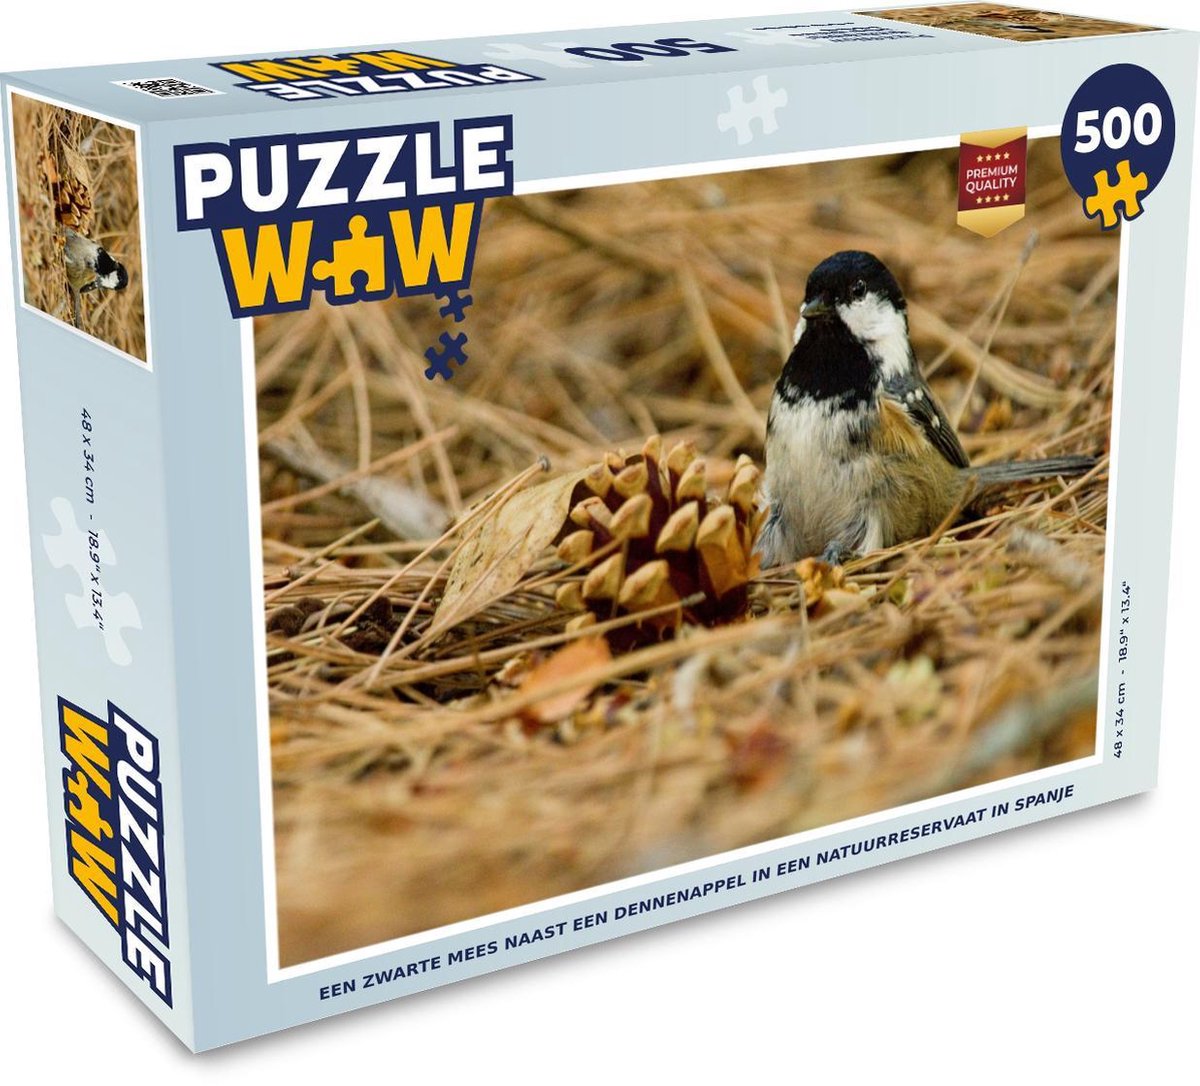 Afbeelding van product Puzzel 500 stukjes Zwarte mees - Een Zwarte mees naast een dennenappel in een natuurreservaat in Spanje - PuzzleWow heeft +100000 puzzels